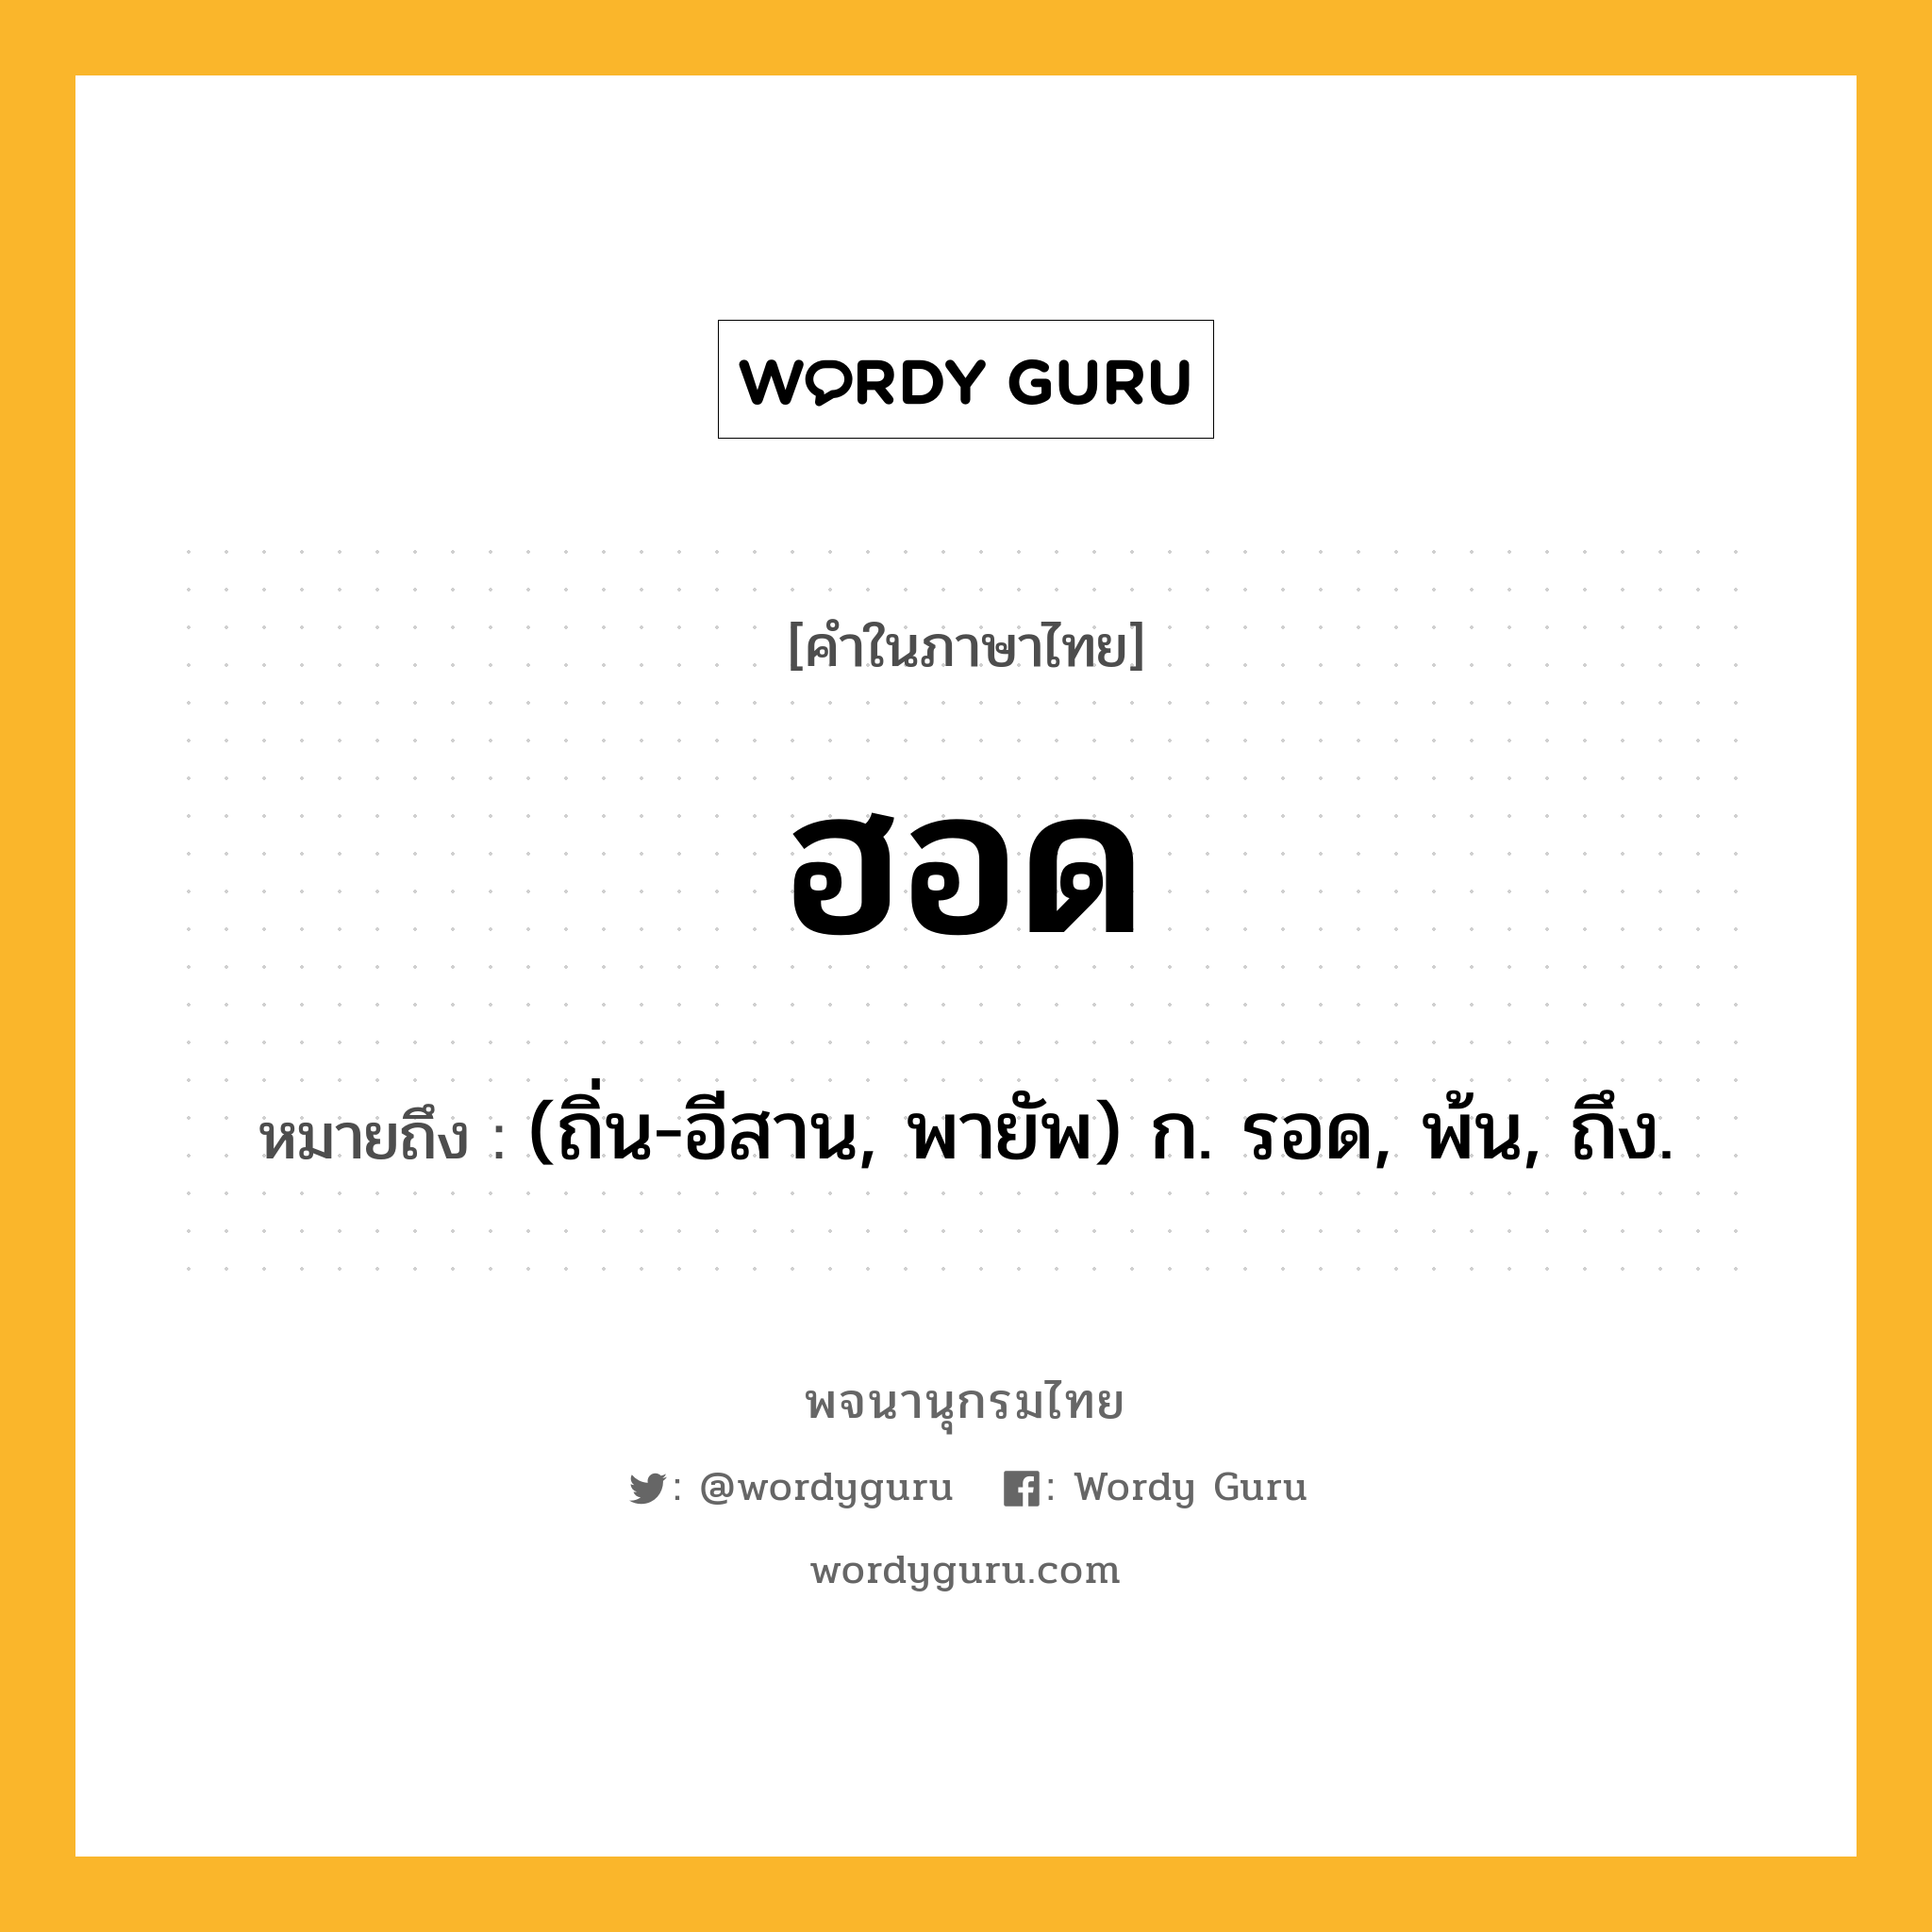 ฮอด ความหมาย หมายถึงอะไร?, คำในภาษาไทย ฮอด หมายถึง (ถิ่น-อีสาน, พายัพ) ก. รอด, พ้น, ถึง.